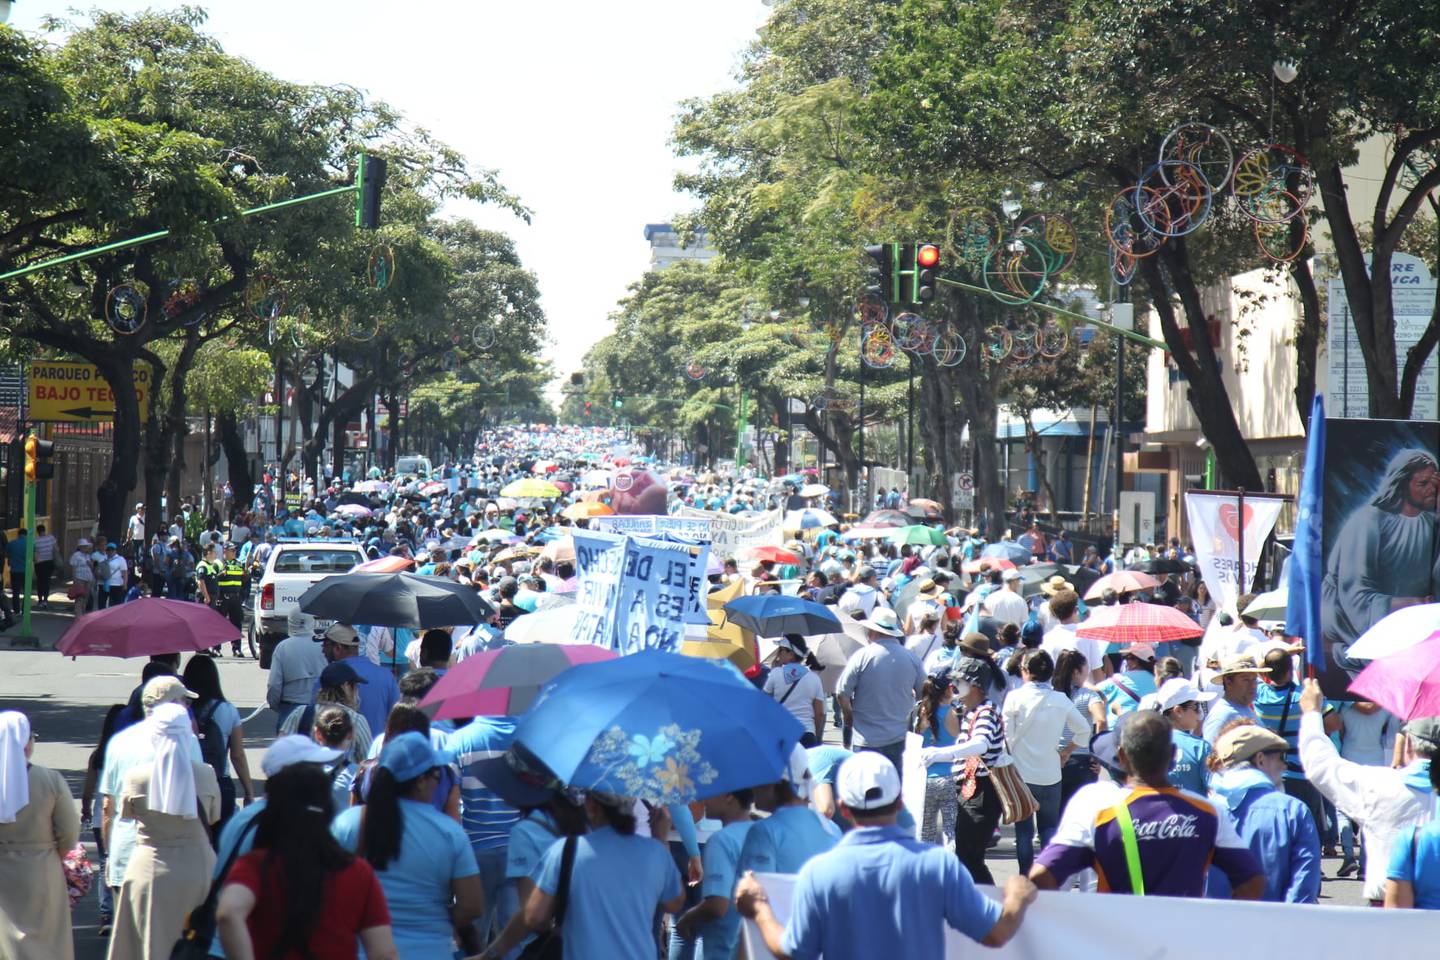 Marcha "A la vida digo sí" organizada por Frente Nacional por la Vida, el grupo Despierta Costa Rica, la iglesia católica y un grupo de iglesias evangélicas del país